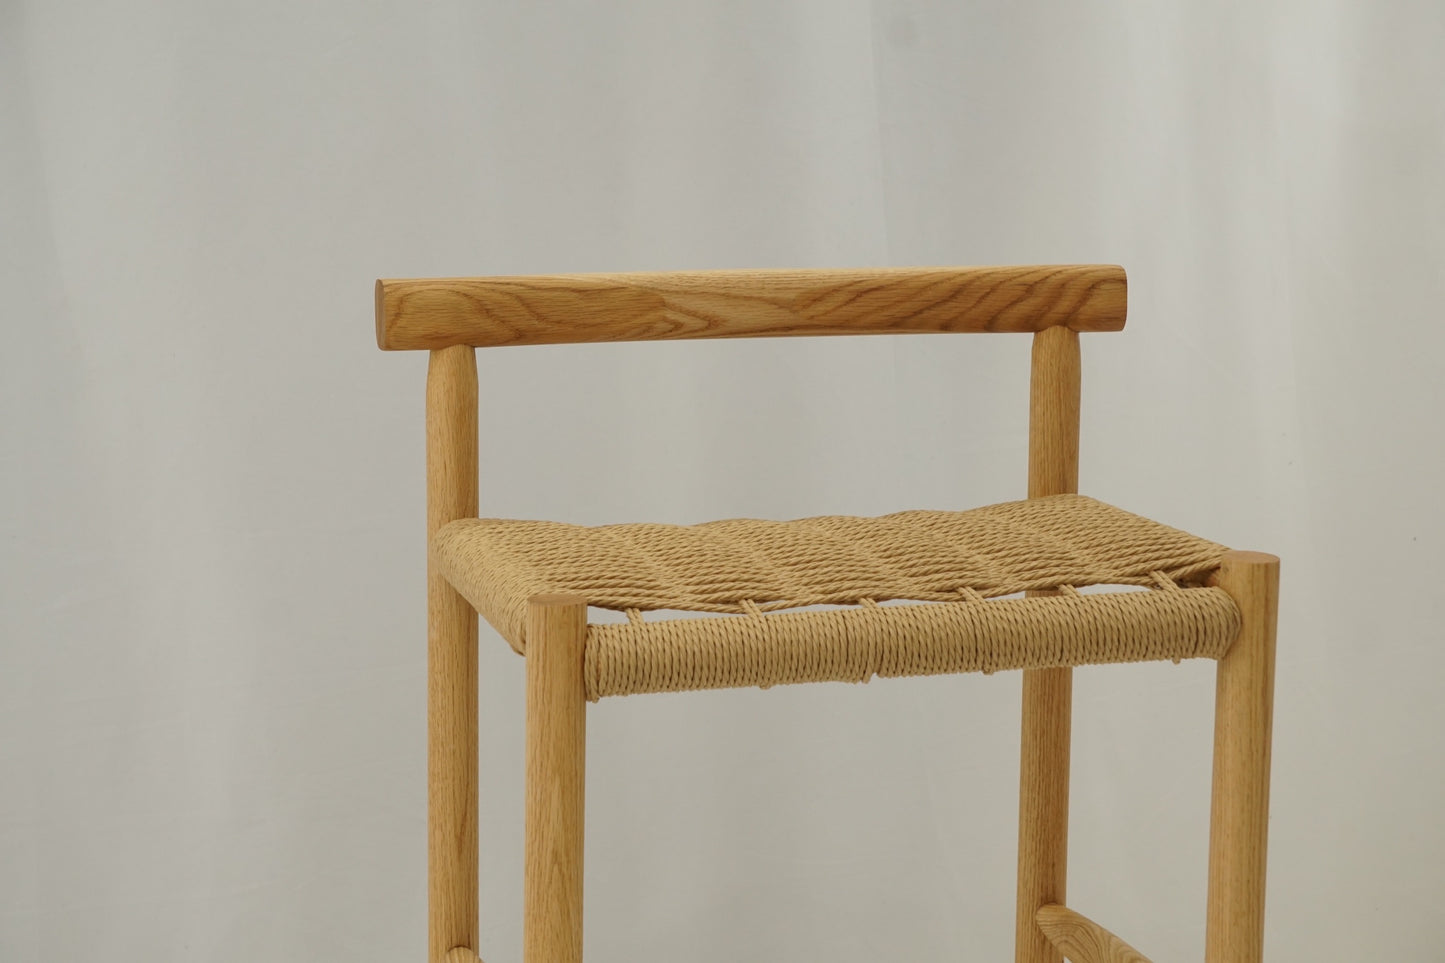 Roundover counter/bar stool